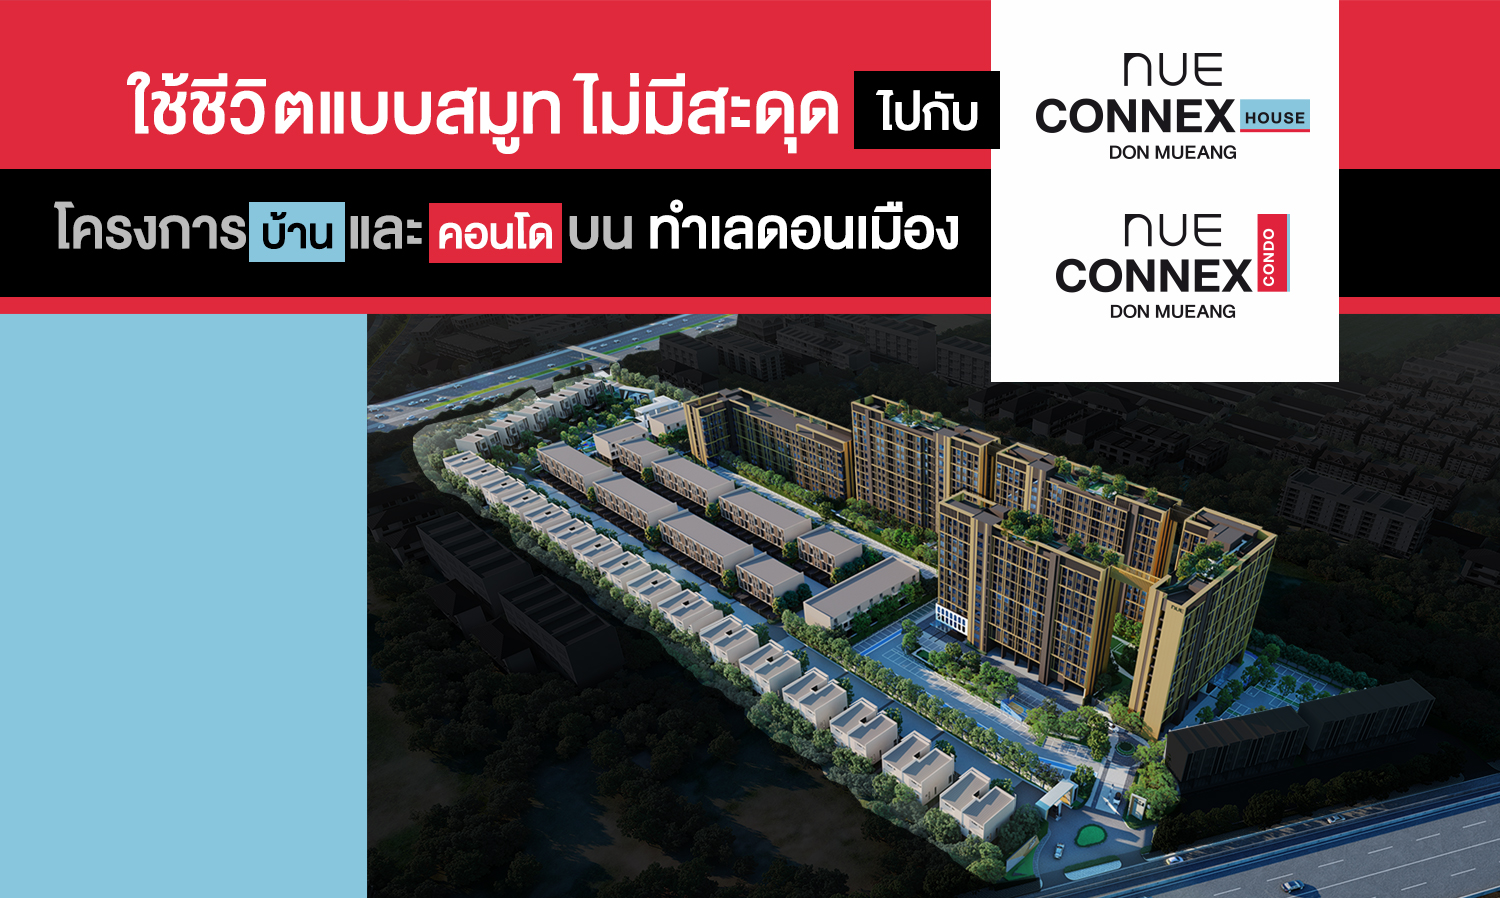 ใช้ชีวิตแบบสมูท ไม่มีสะดุด ไปกับ Nue Connex Don Mueang โครงการบ้านและคอนโดบนทำเลดอนเมือง